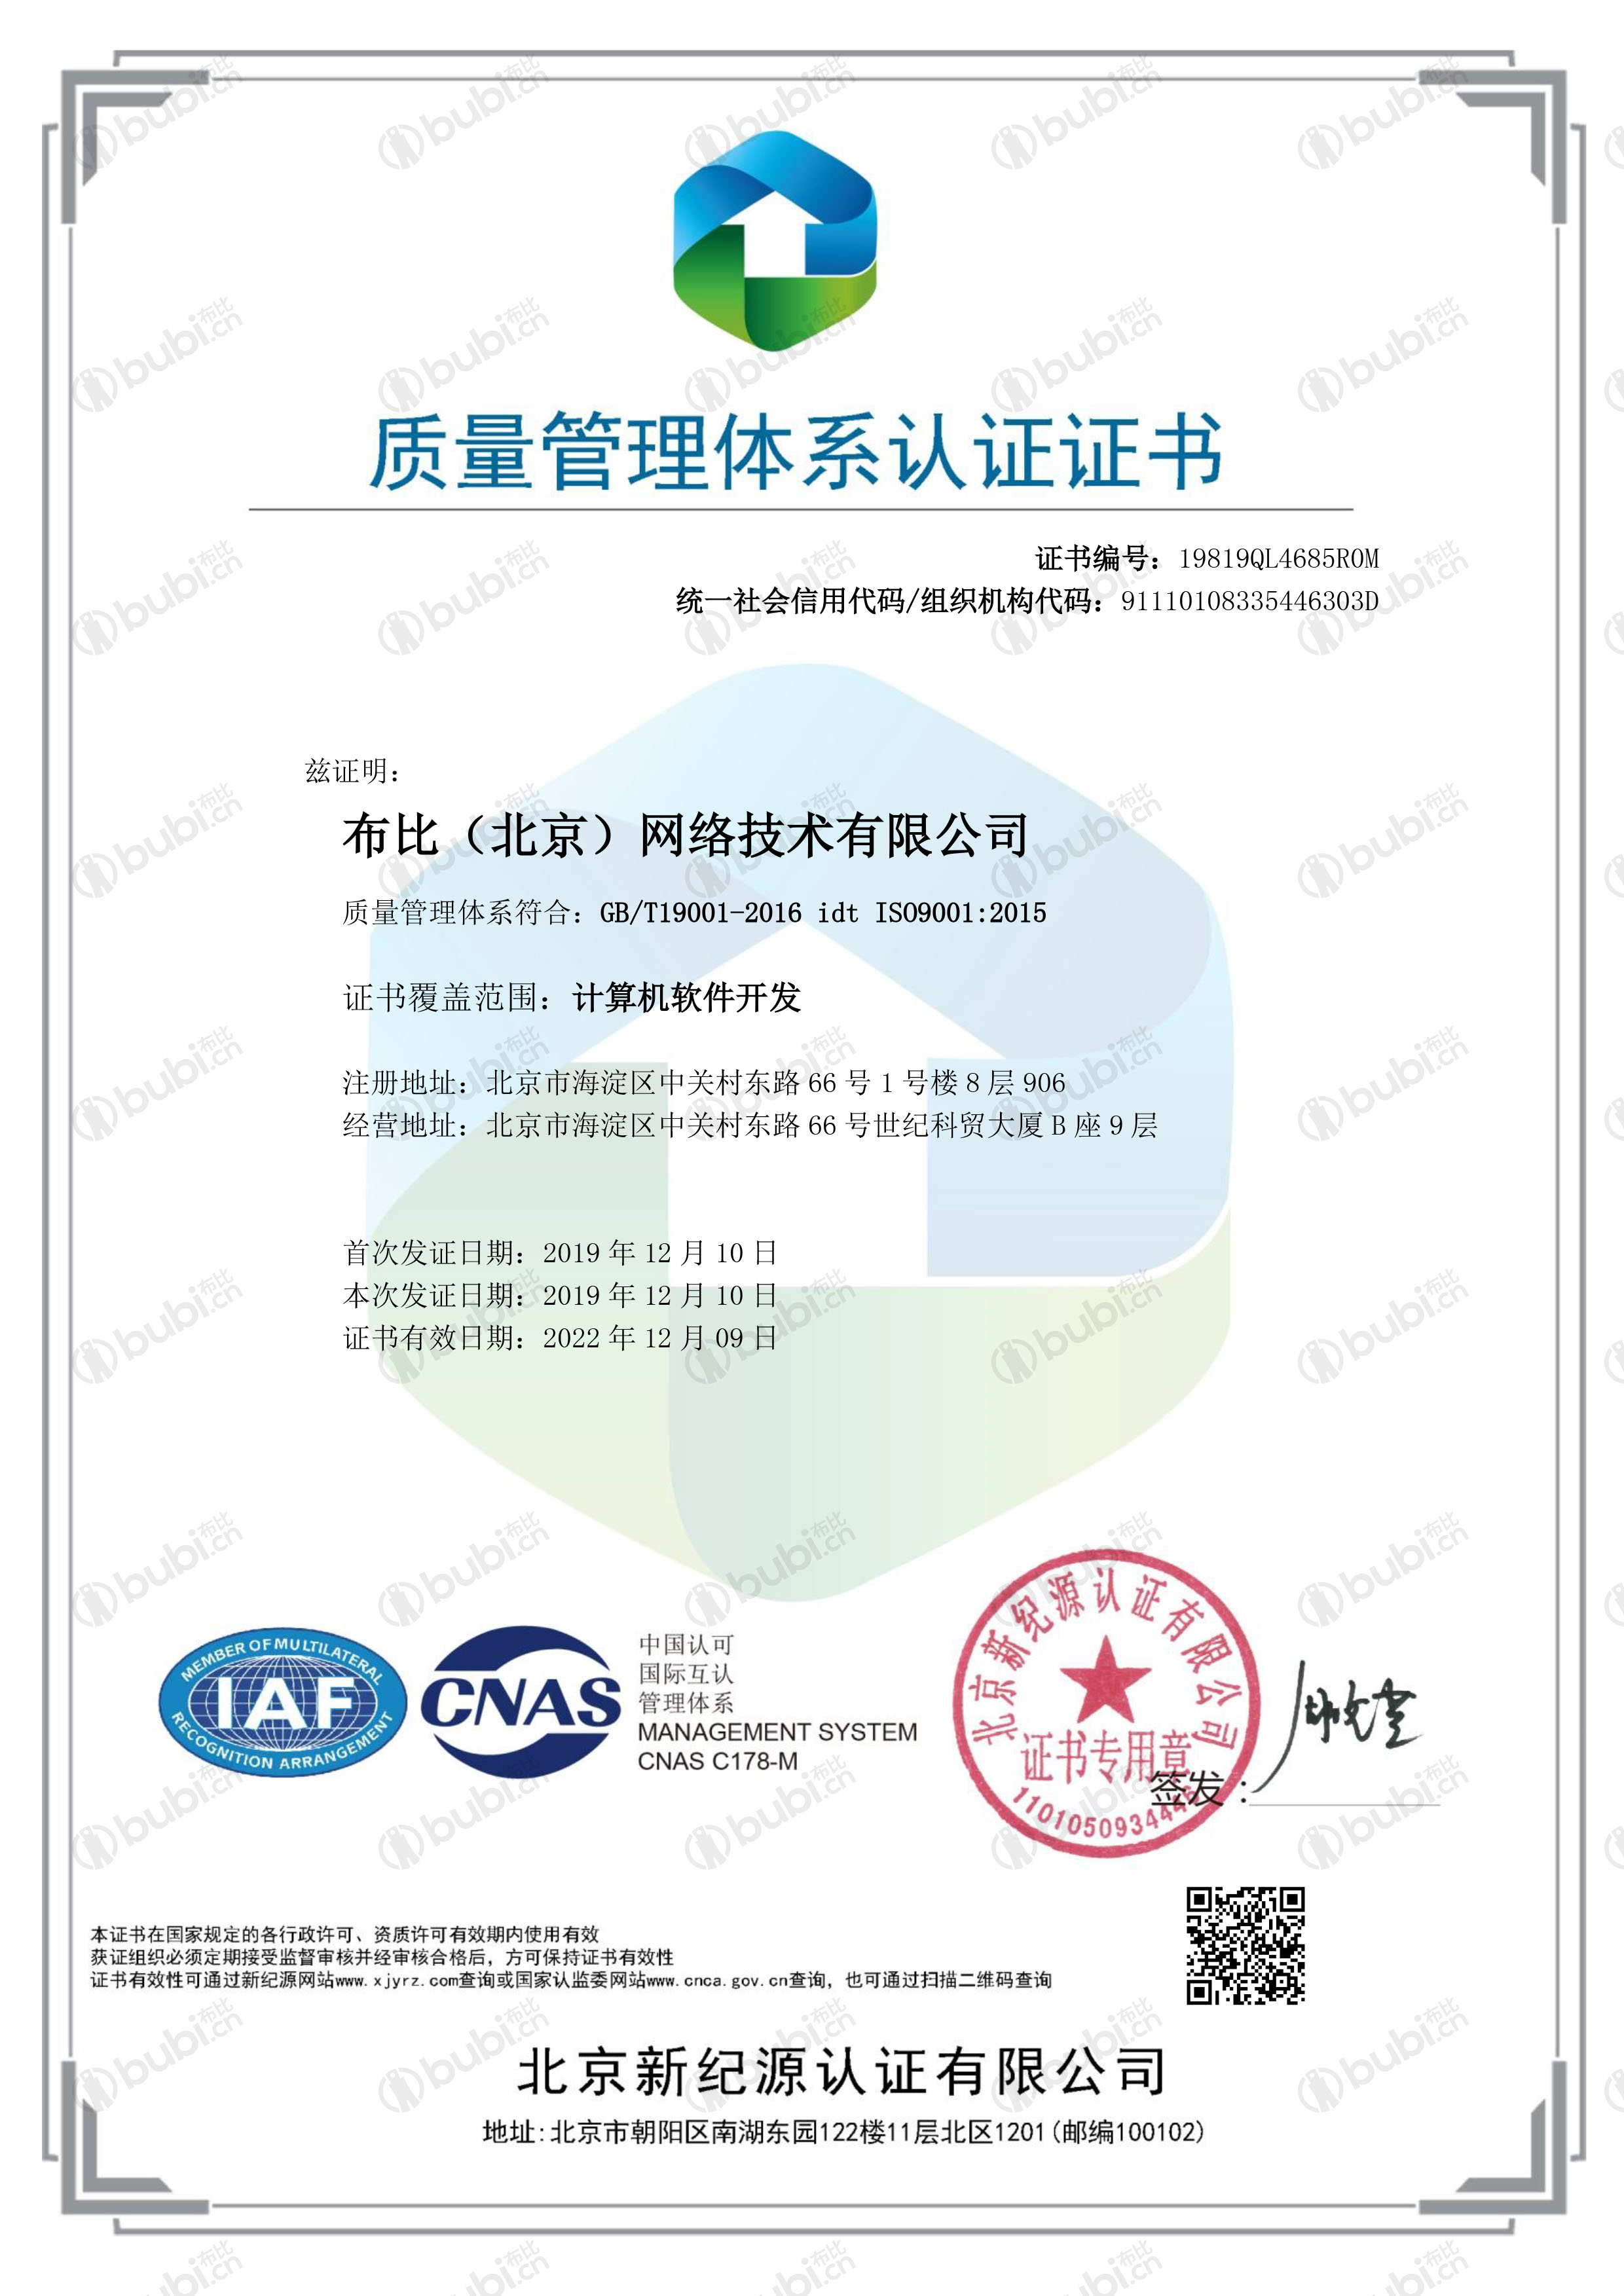 布比（北京）网络技术有限公司-QMS-中文证书 (1)1.jpg